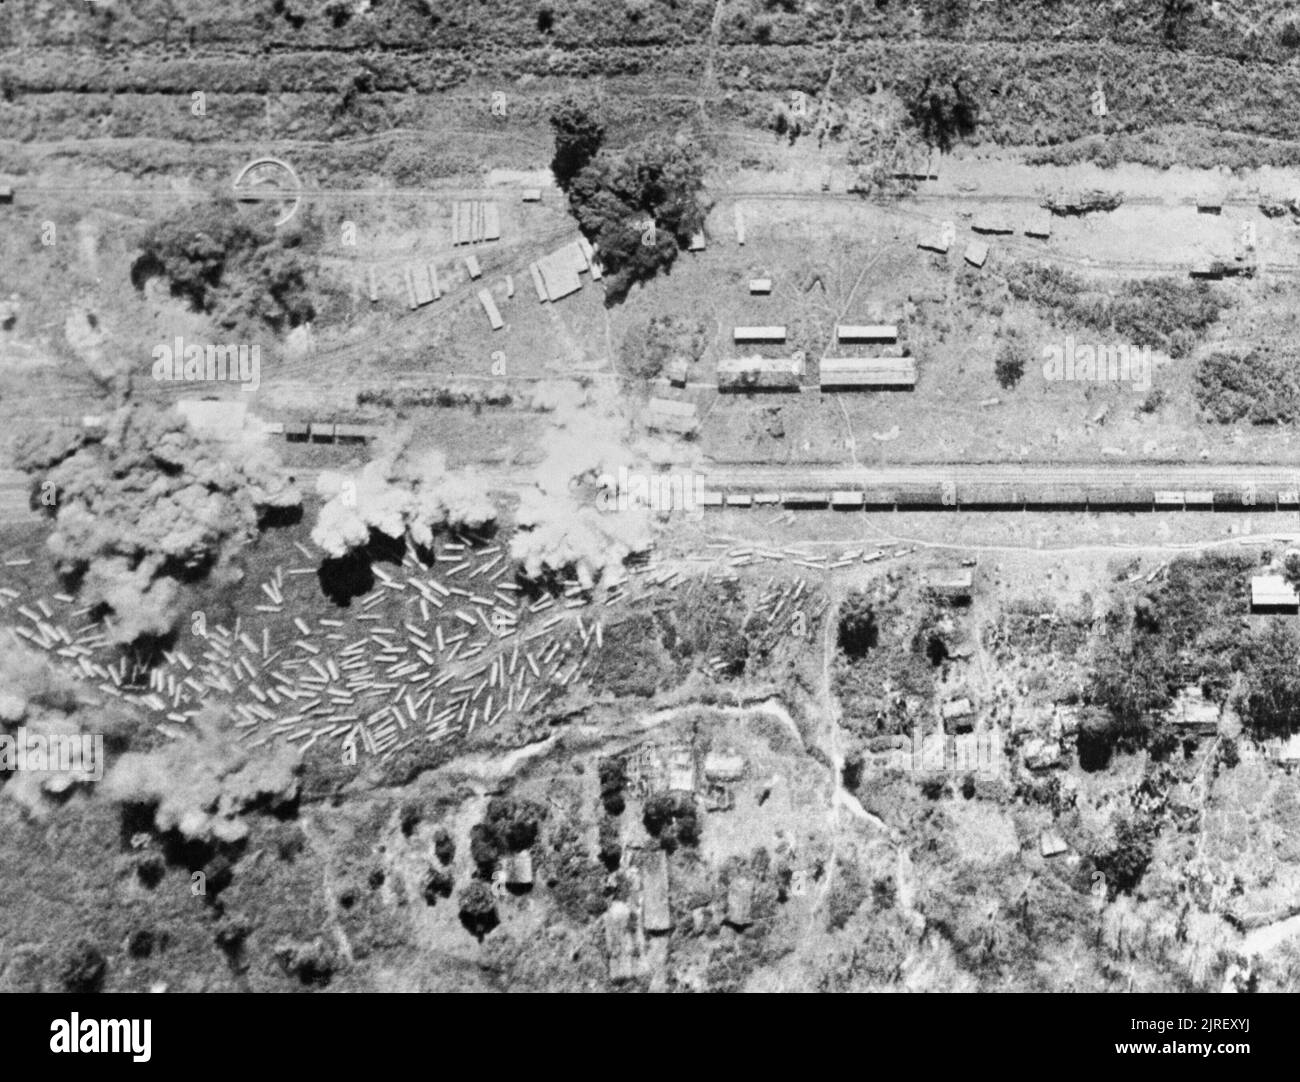 Royal Air Force in den Fernen Osten, 1941-1945. Bomben auf Ywataung-Myitkyina Bahnstrecke in der Nähe des Irrawaddy Fluss in Birma explodieren, bei einer Razzia von der Bristol Blenheims der Nr. 167 Wing RAF Betrieb von Flugplätzen in Indien. An der linken Seite kann teak Protokolle, wahrscheinlich durch die japanischen Lkw befördert gesehen werden und off-geladen Floating auf dem Irrawaddy in der Monsunzeit zu erwarten. Stockfoto